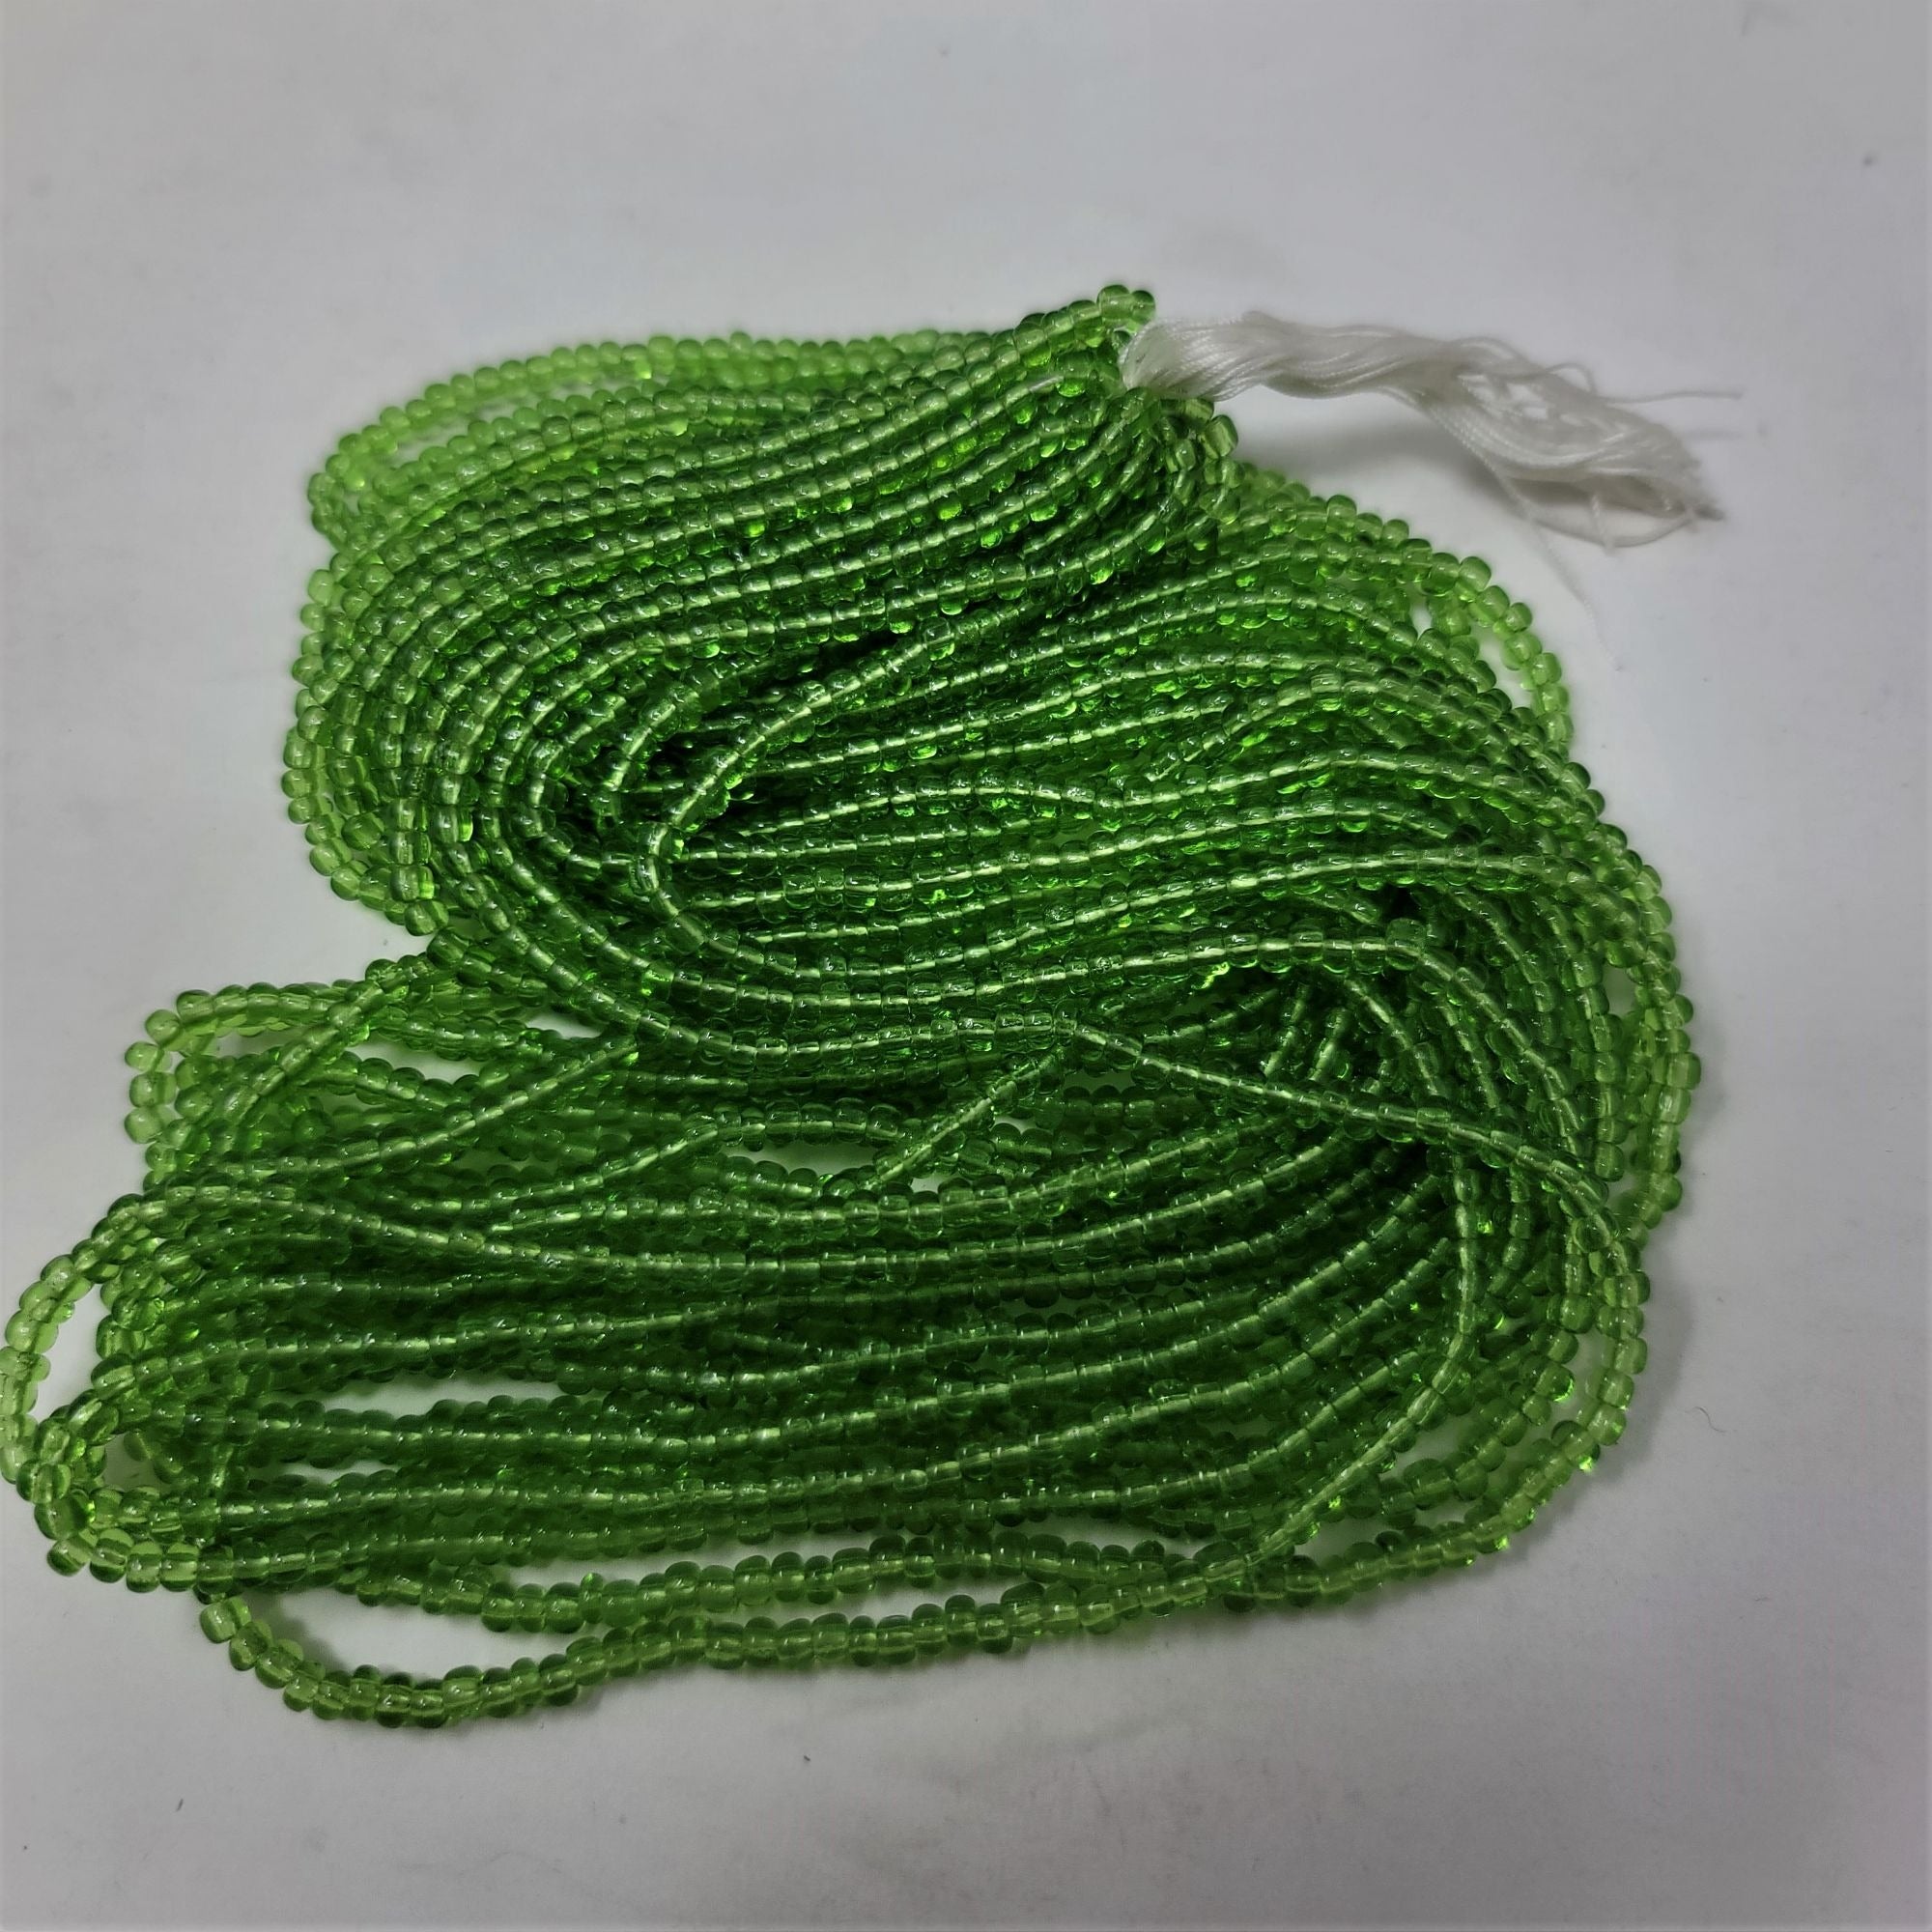 Czech Glass Seed Beads Transparent Green One Hank 12 strands